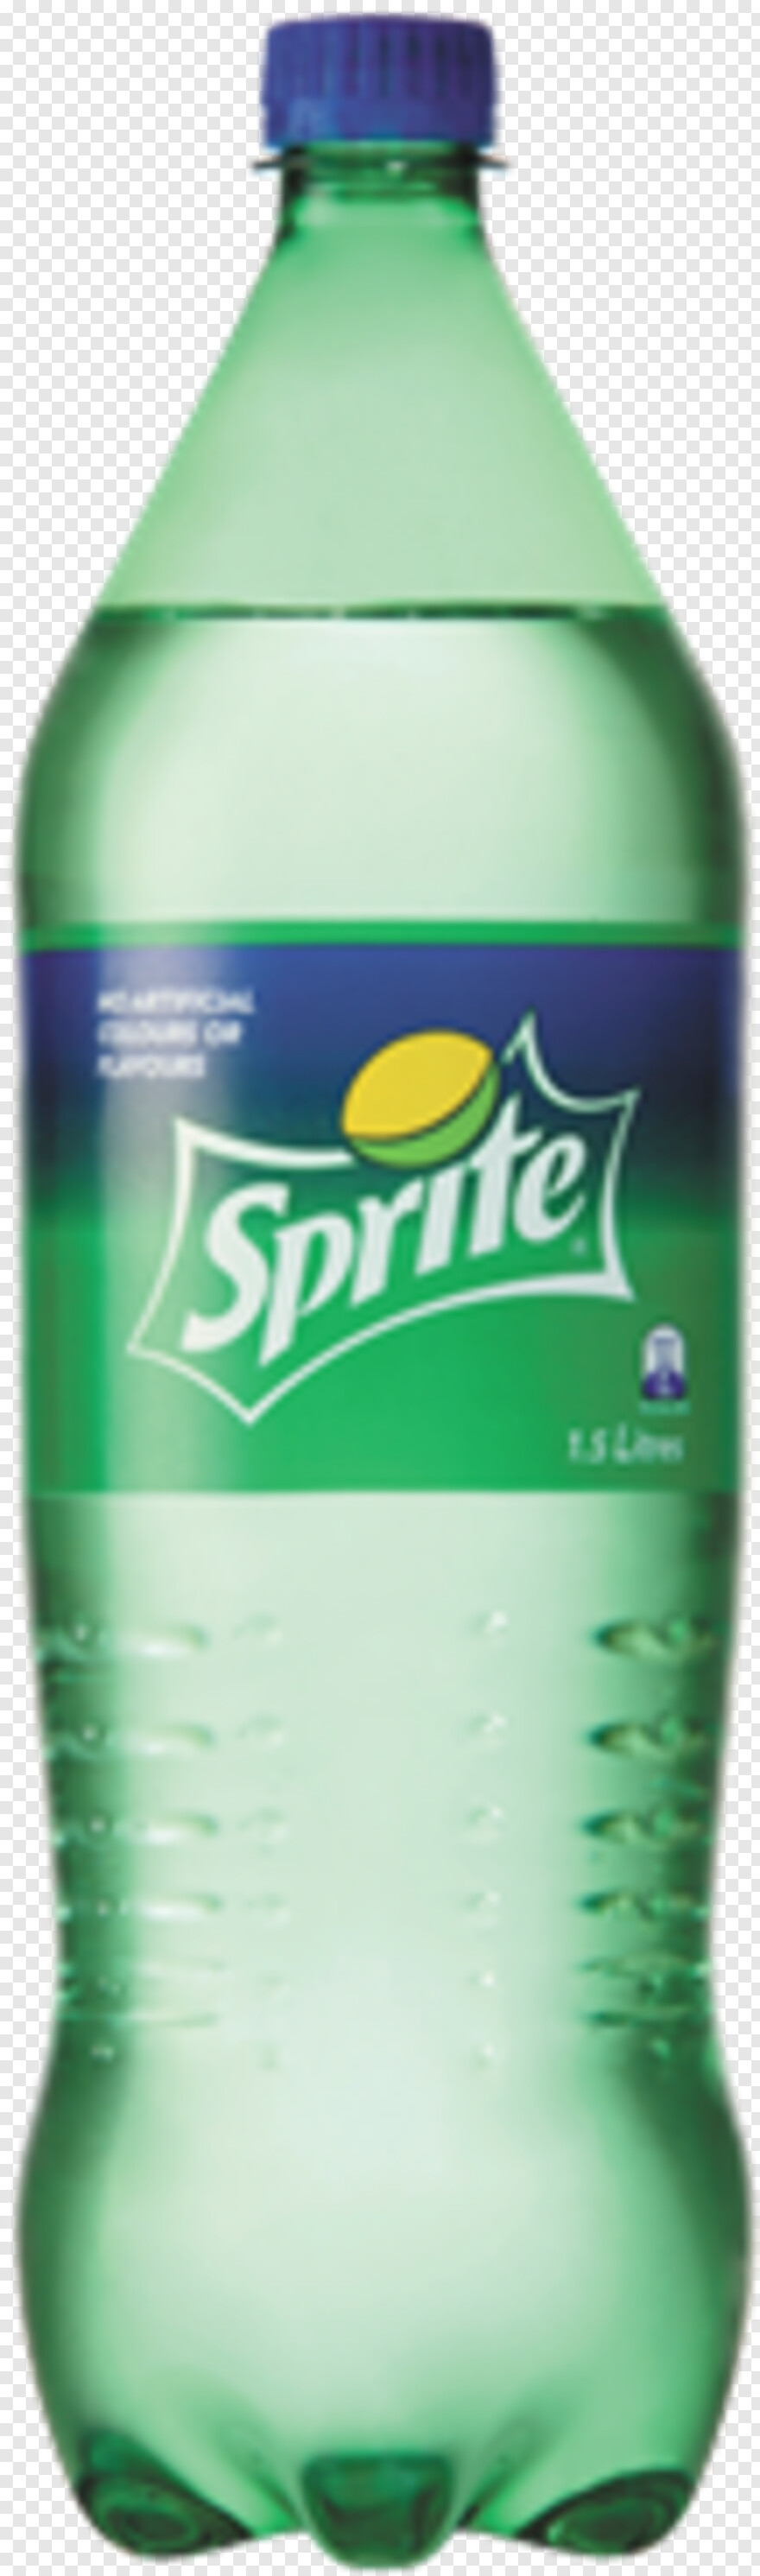 sprite-bottle # 325944